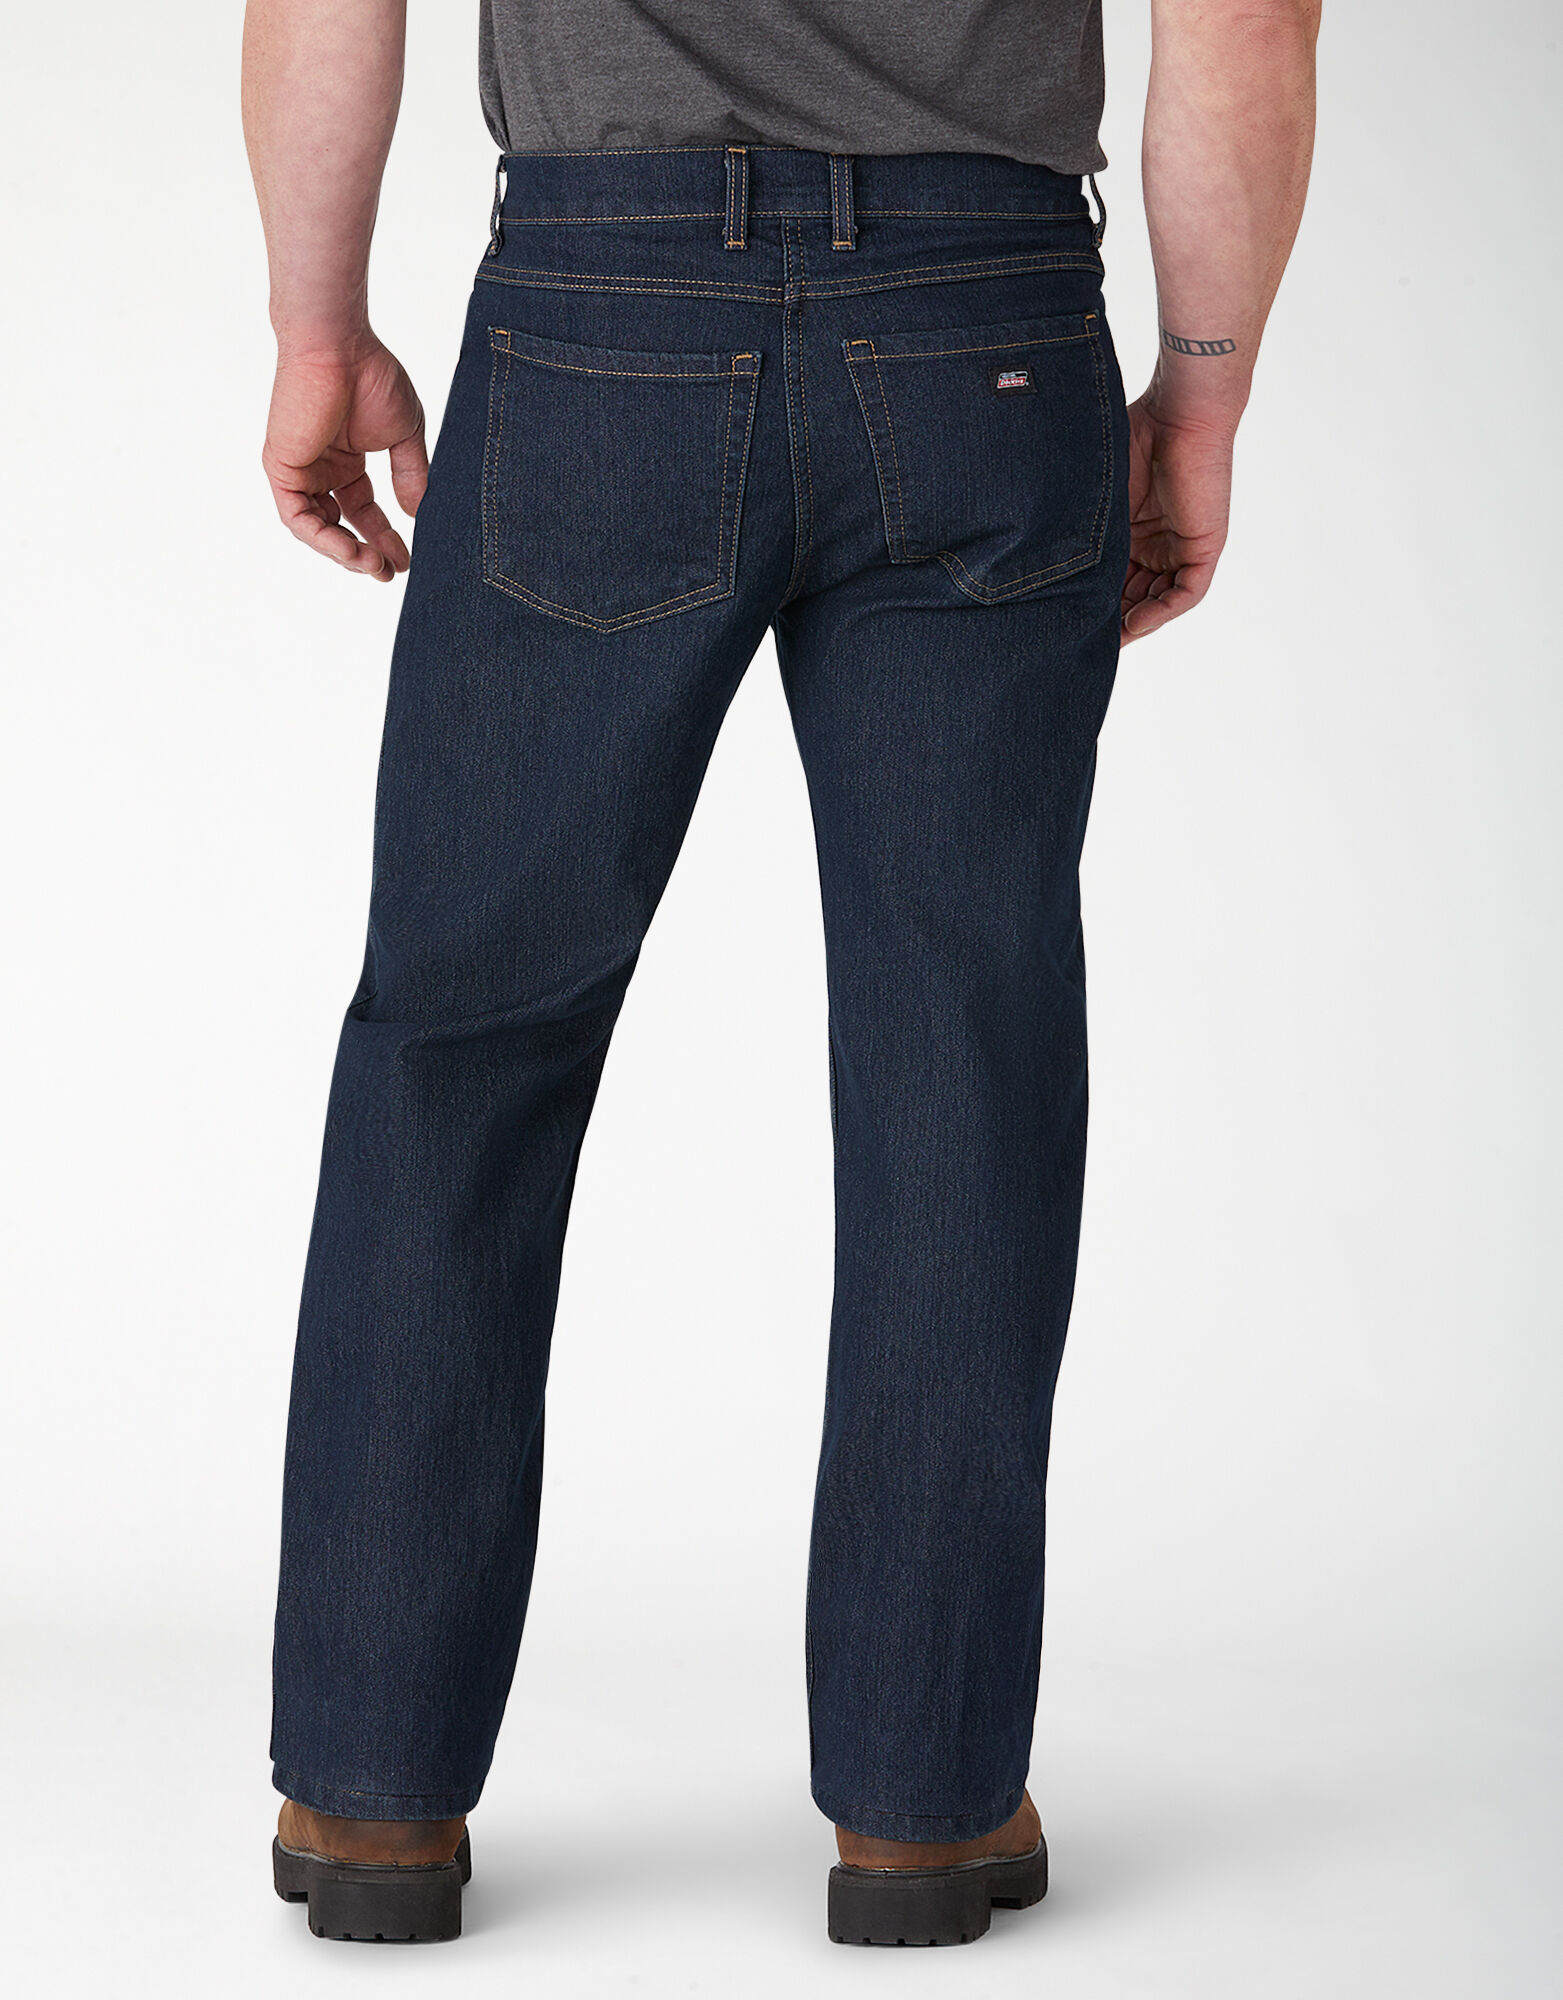 Genuine Dickies Regular Fit 5 Pocket Jeans | Men's Jeans | Dickies